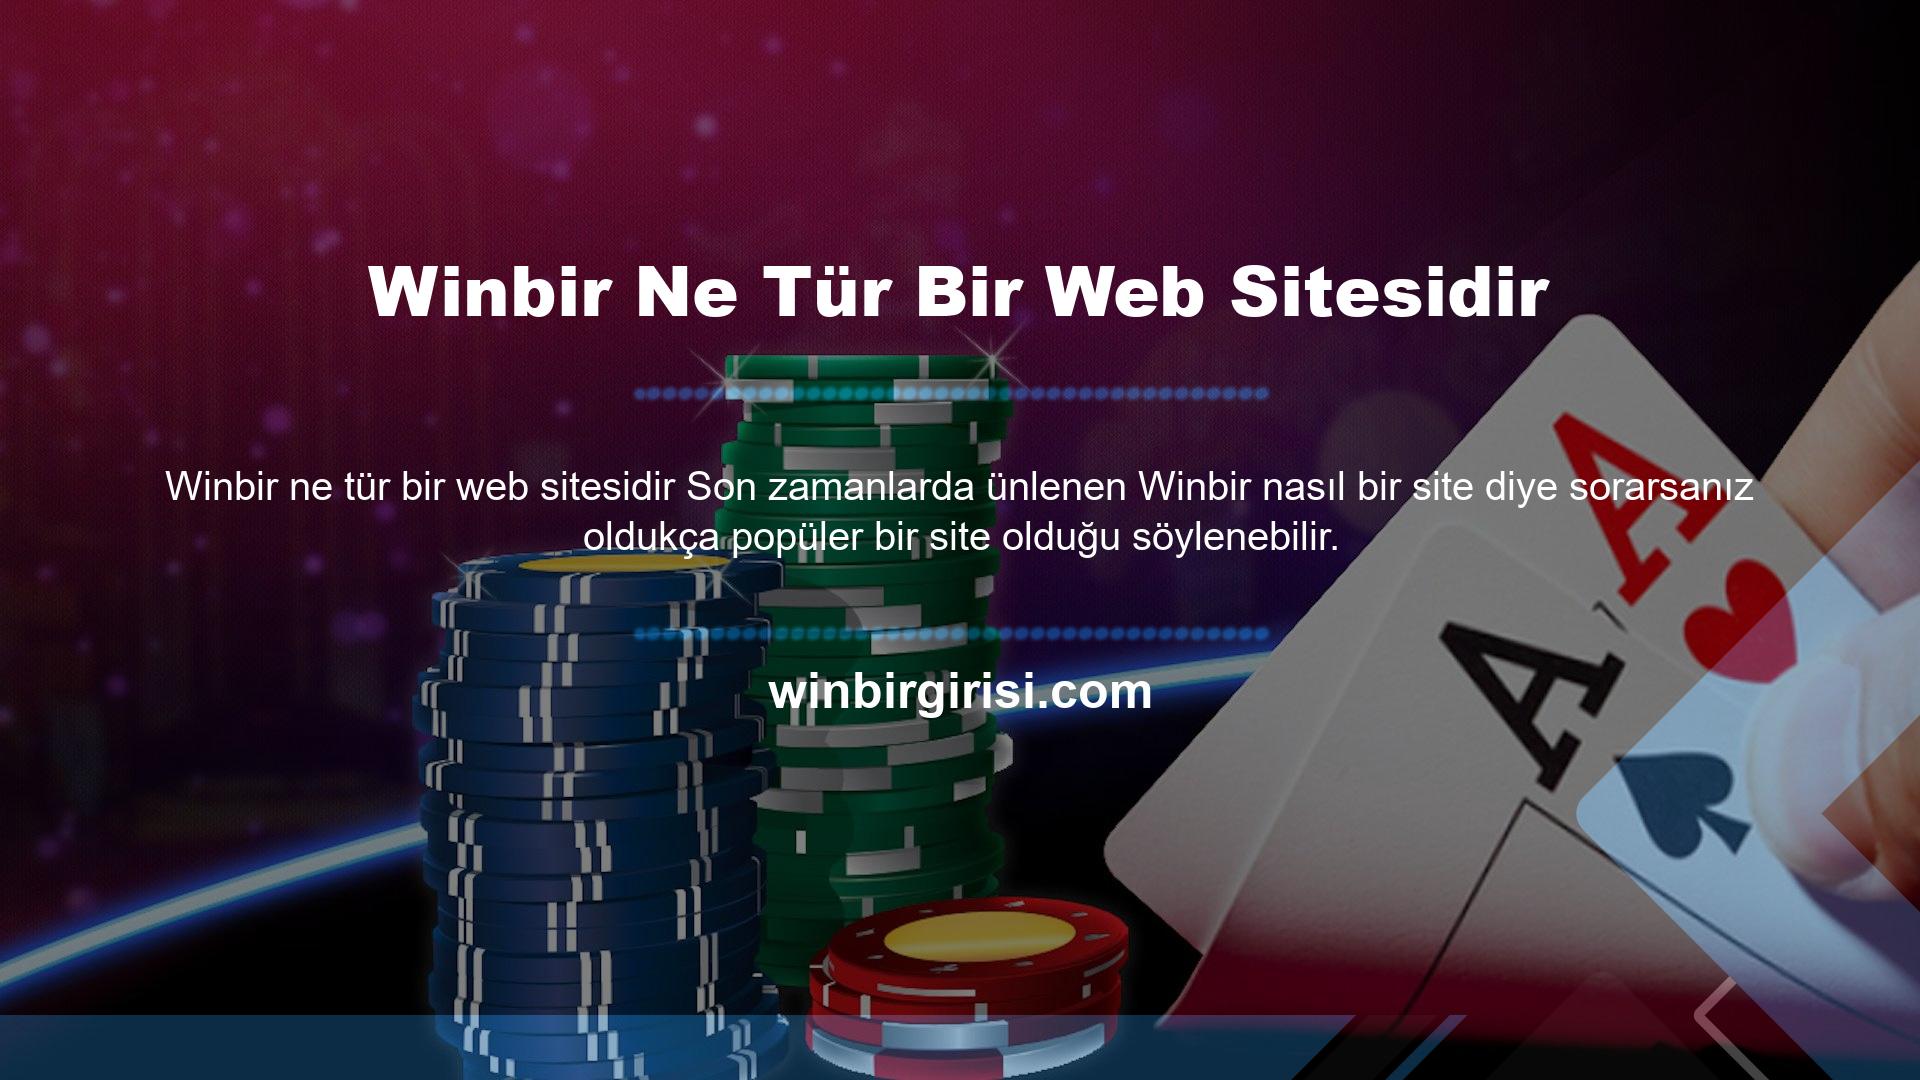 Winbir Bahis neredeyse yeni bir web sitesi olmasına rağmen oldukça iyi çalıştığını söylemek gerekir